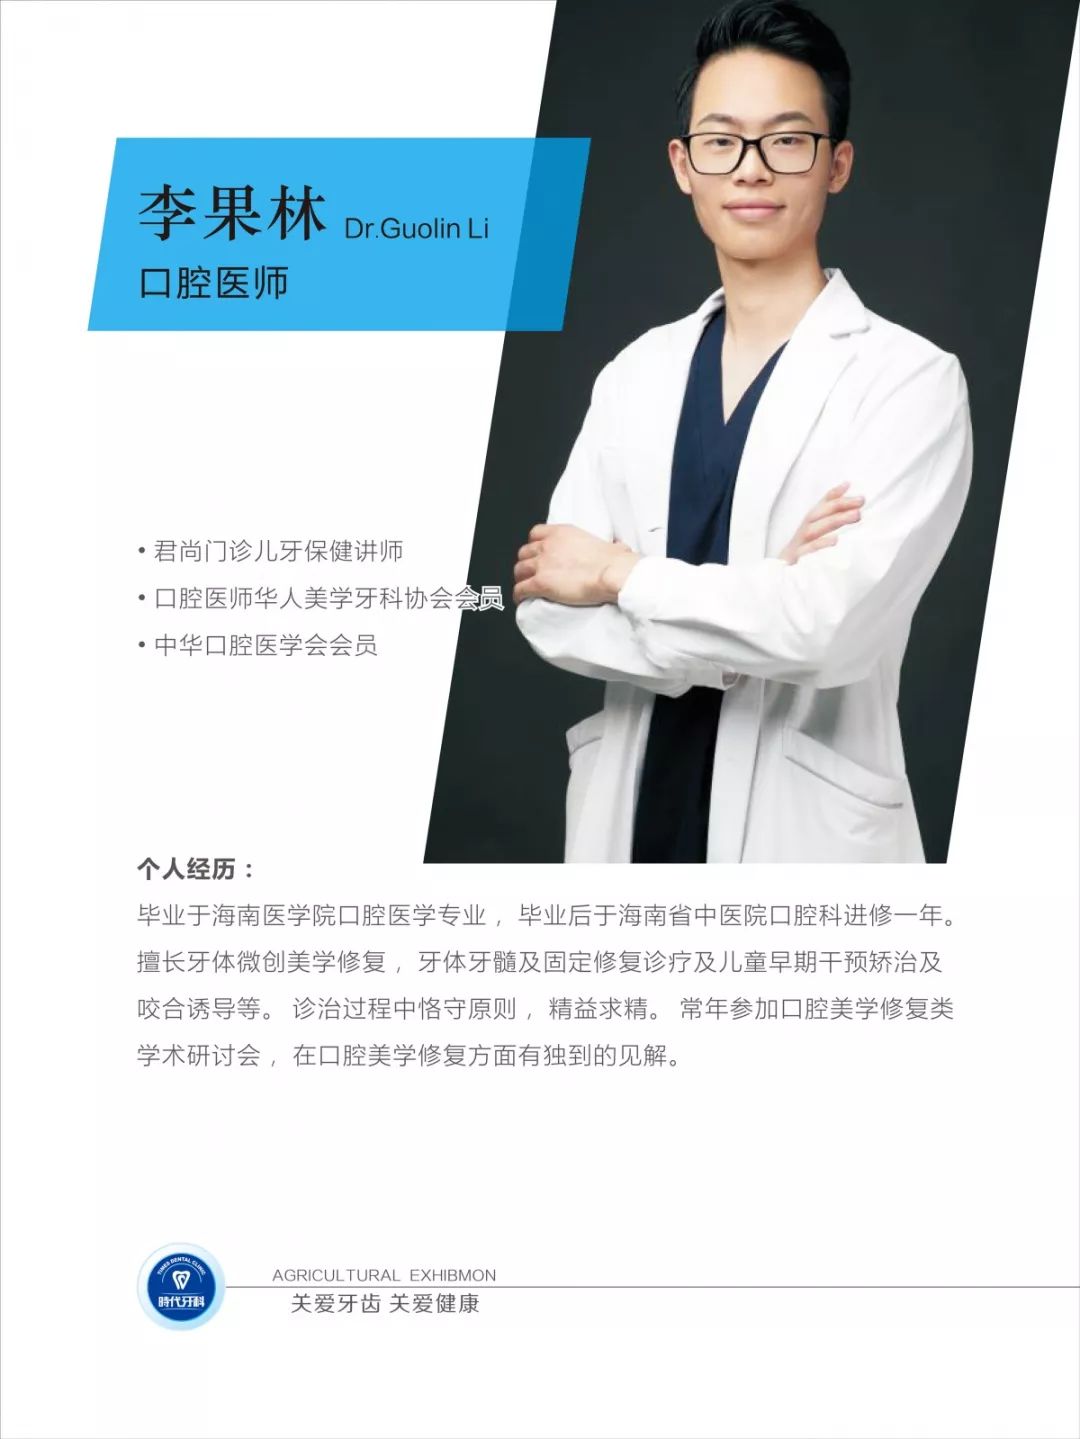 活动当天接诊的医生是时代牙科君尚门诊主任孟庆玉医生和口腔医师李果